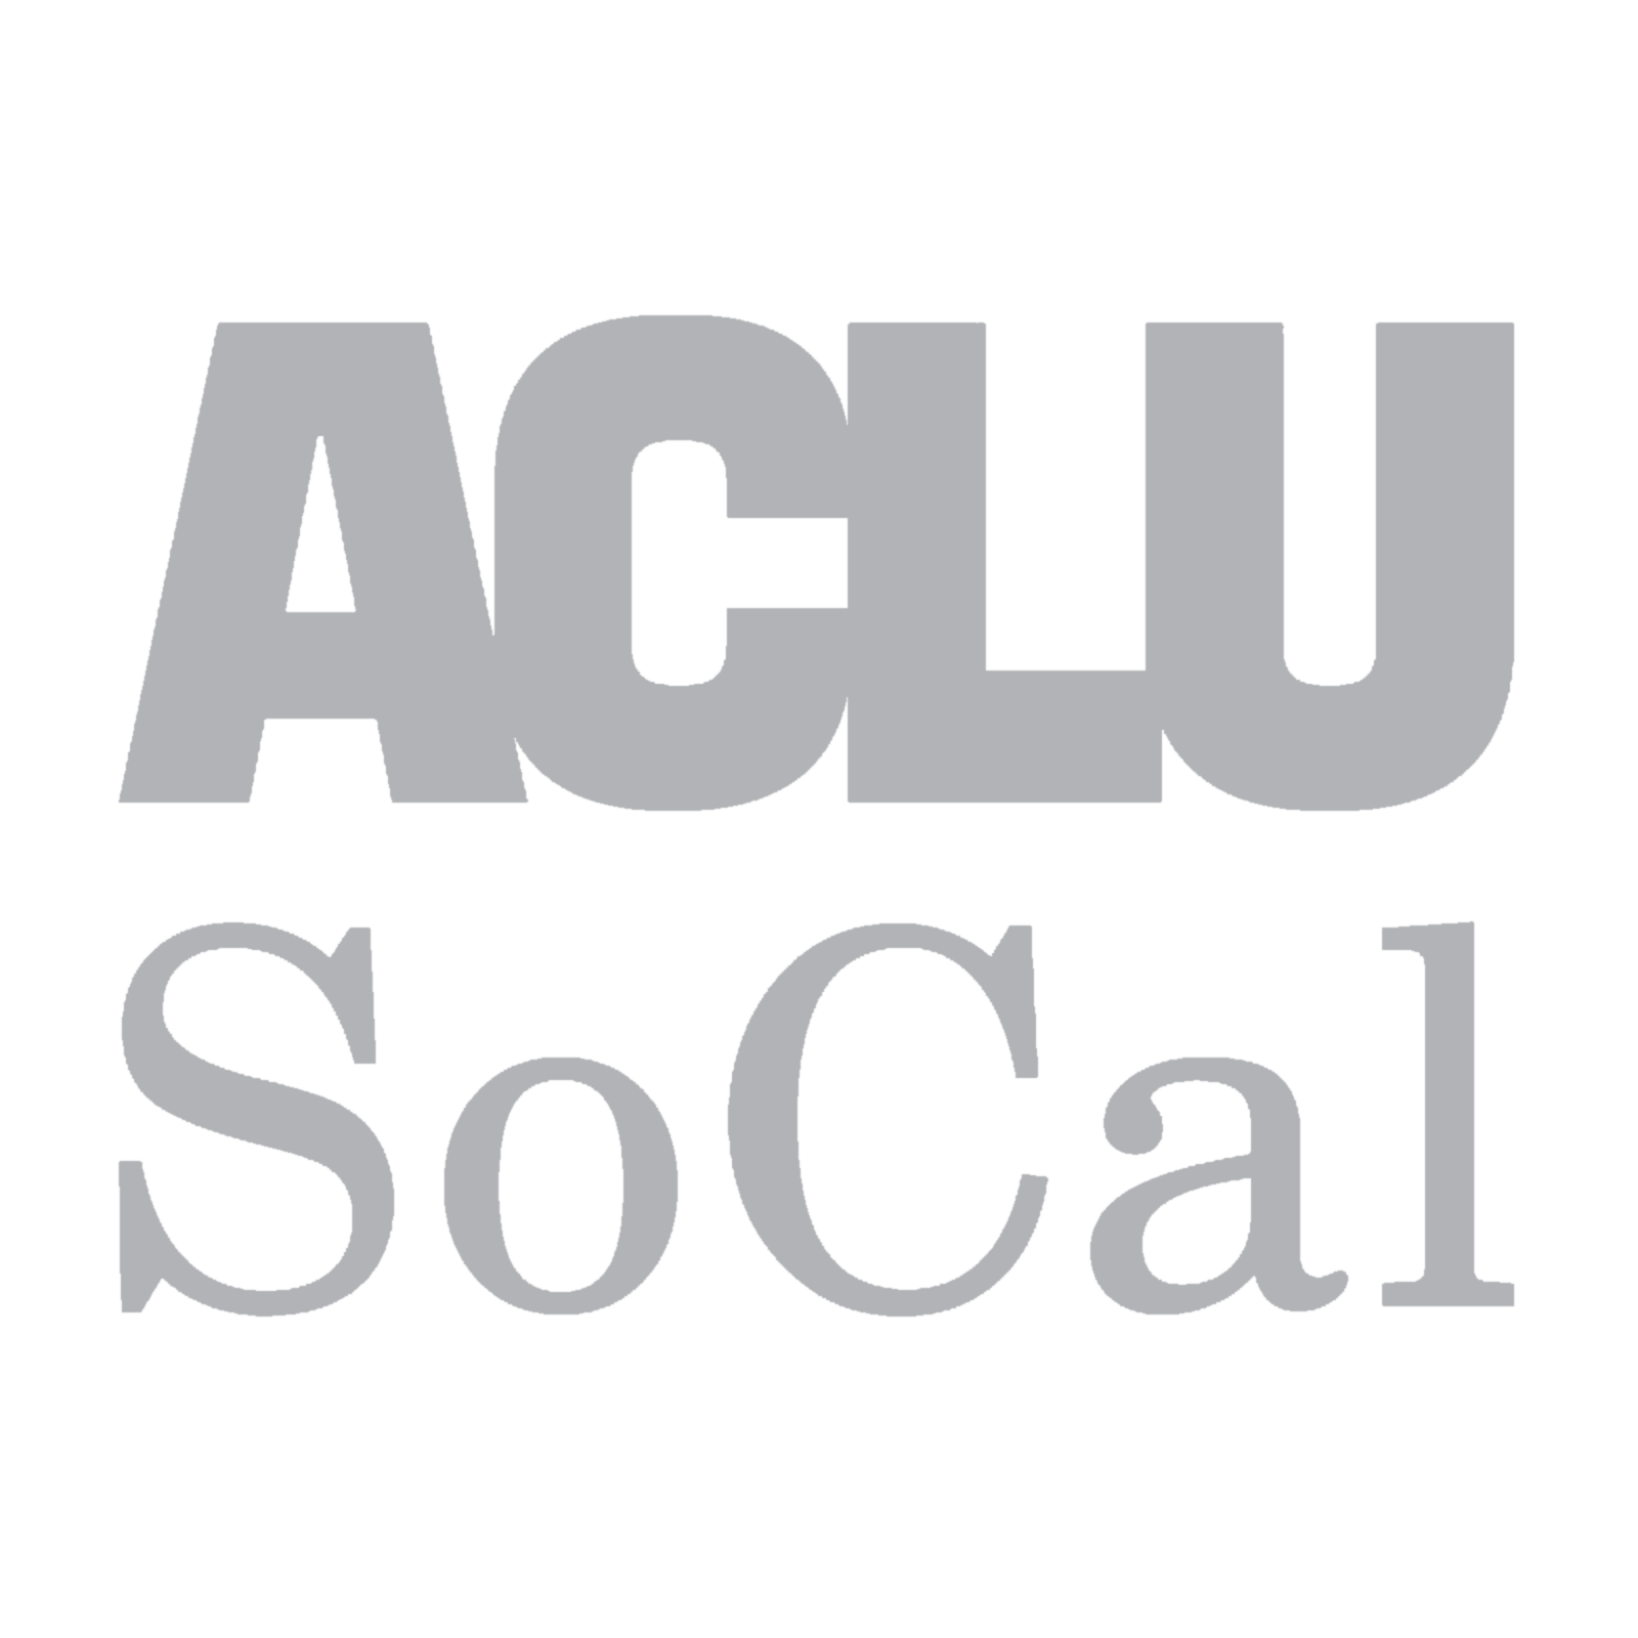 ACLU_Socal